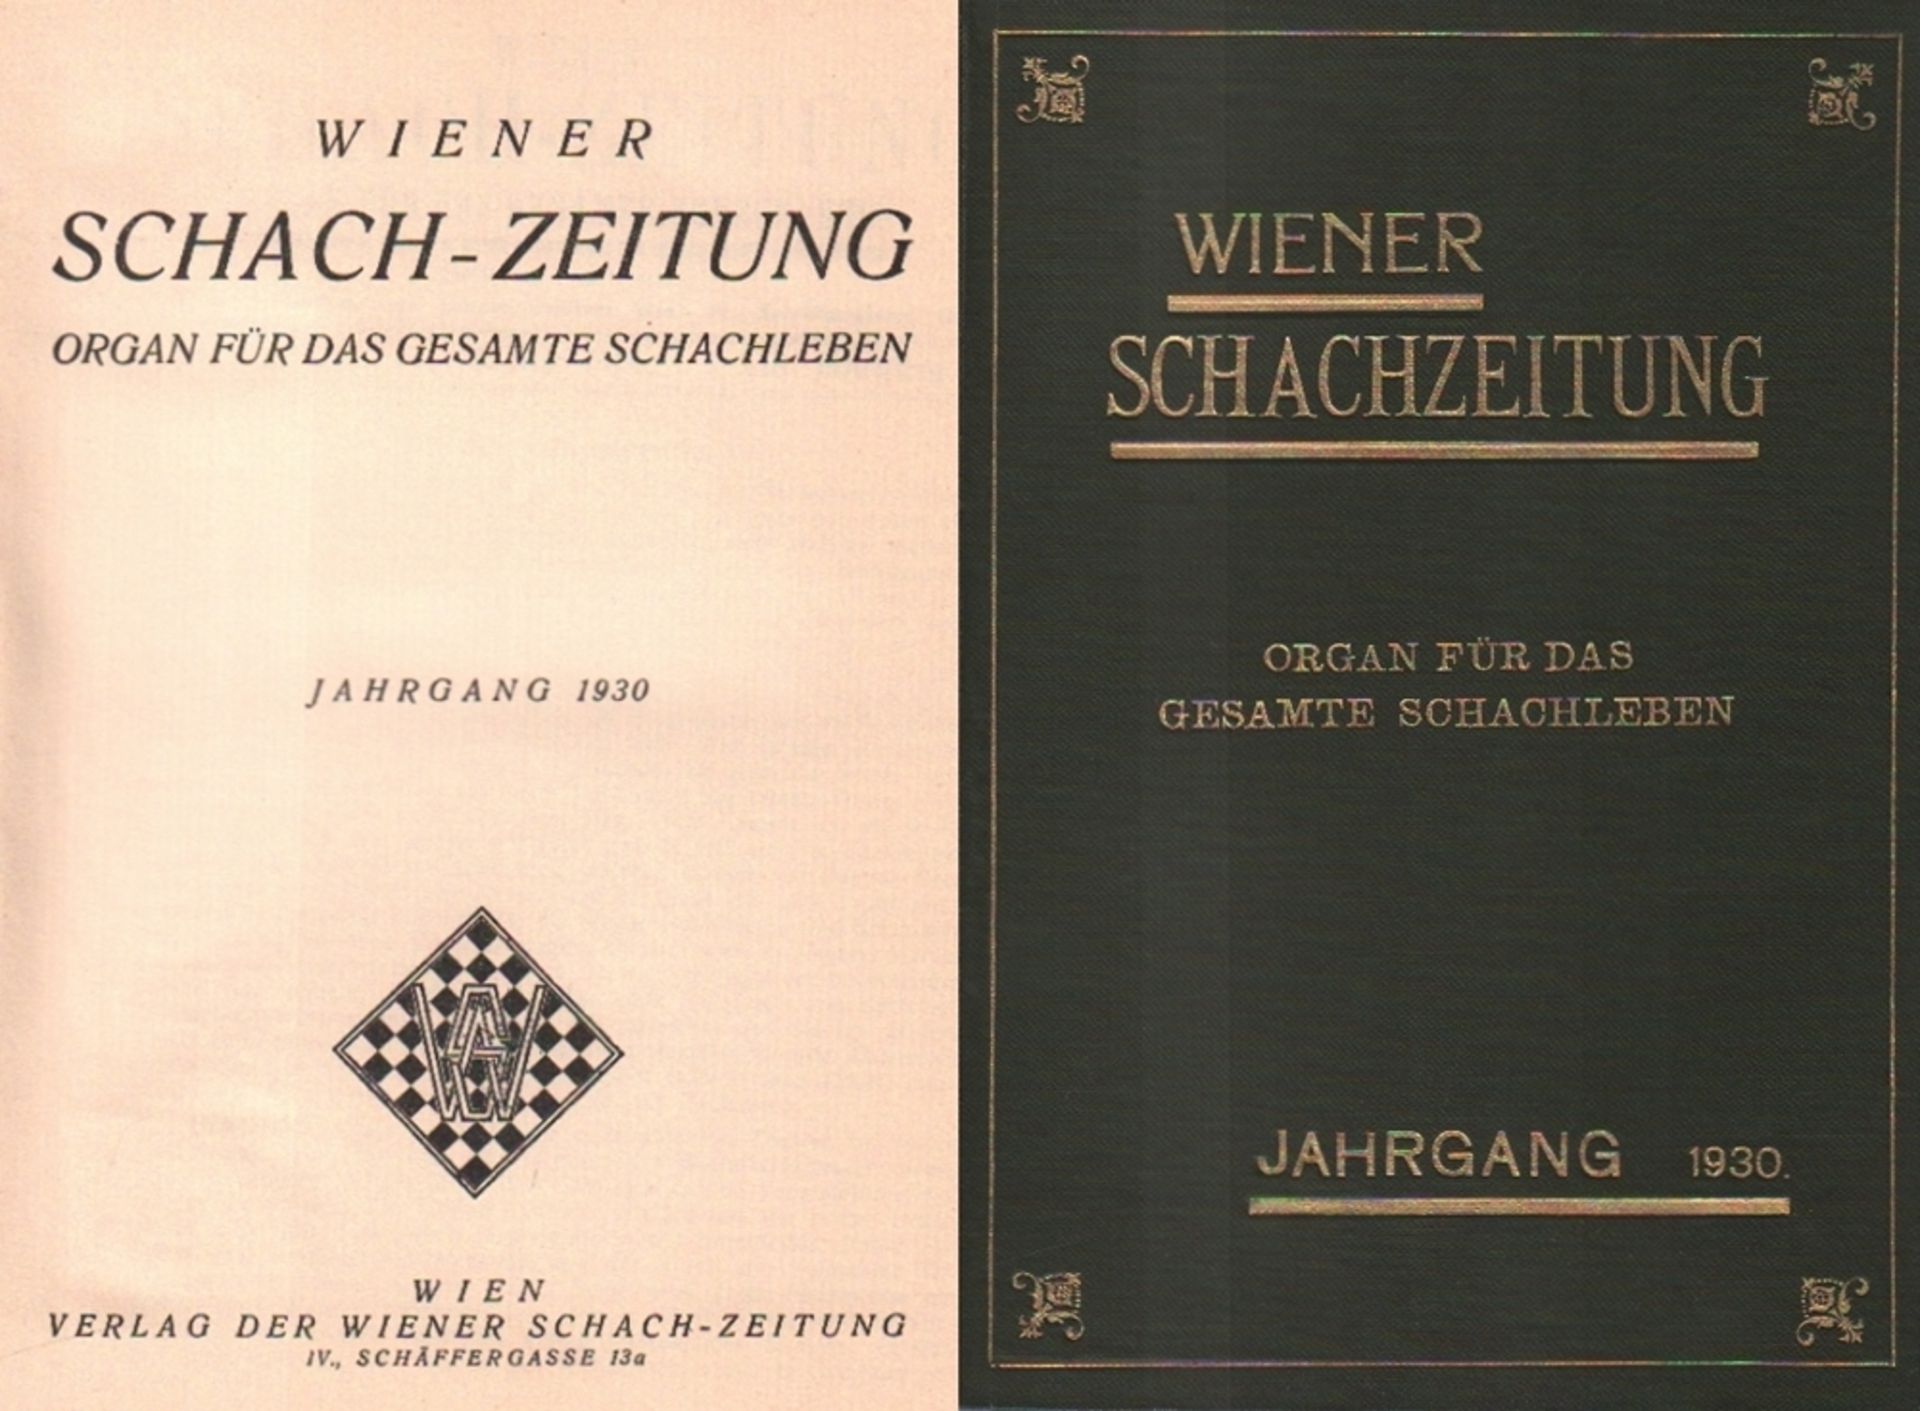 Wiener Schachzeitung. Organ für das gesamte Schachleben. (VIII.) Jahrgang 1930. Wien, Verlag der